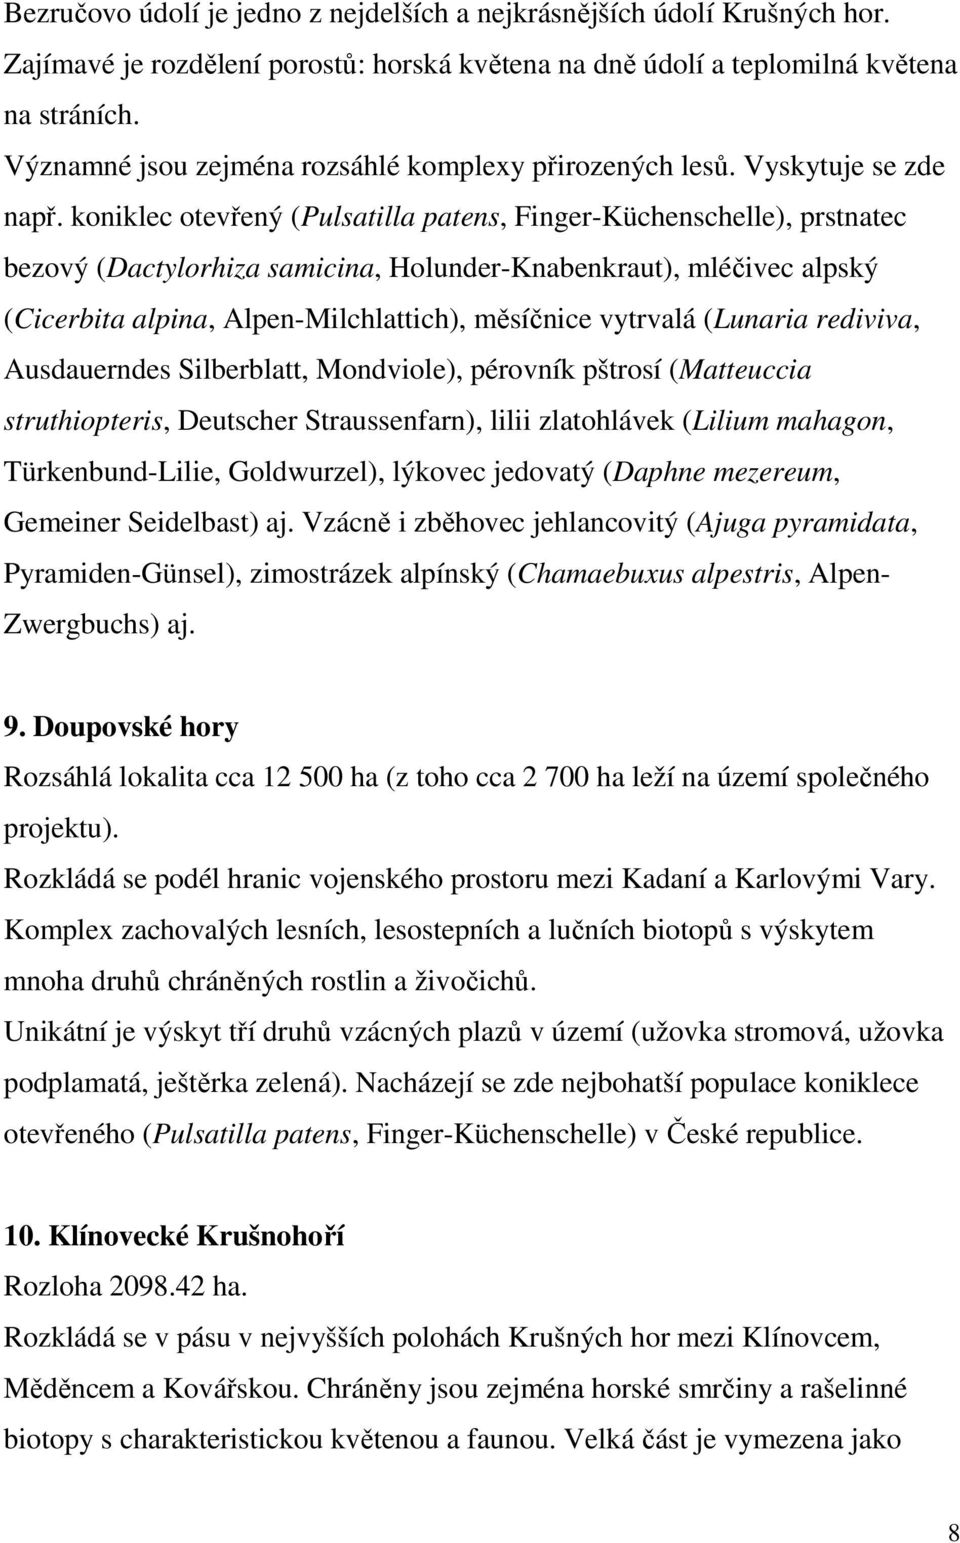 koniklec otevřený (Pulsatilla patens, Finger-Küchenschelle), prstnatec bezový (Dactylorhiza samicina, Holunder-Knabenkraut), mléčivec alpský (Cicerbita alpina, Alpen-Milchlattich), měsíčnice vytrvalá